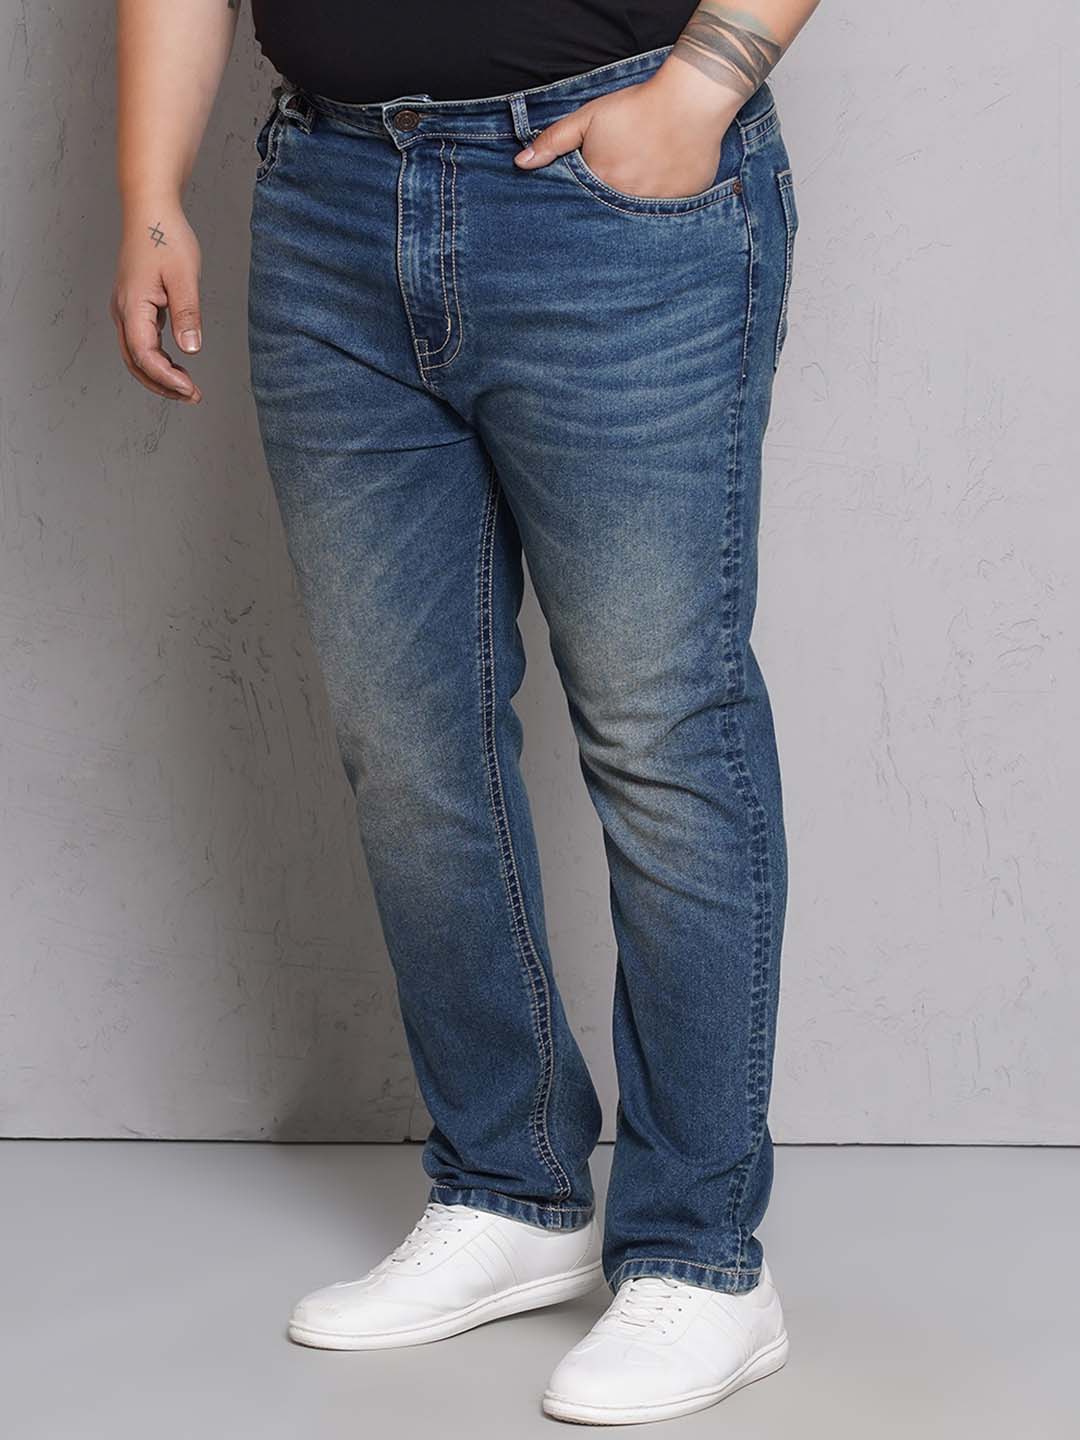 bottomwear/jeans/EJPJ25147/ejpj25147-4.jpg